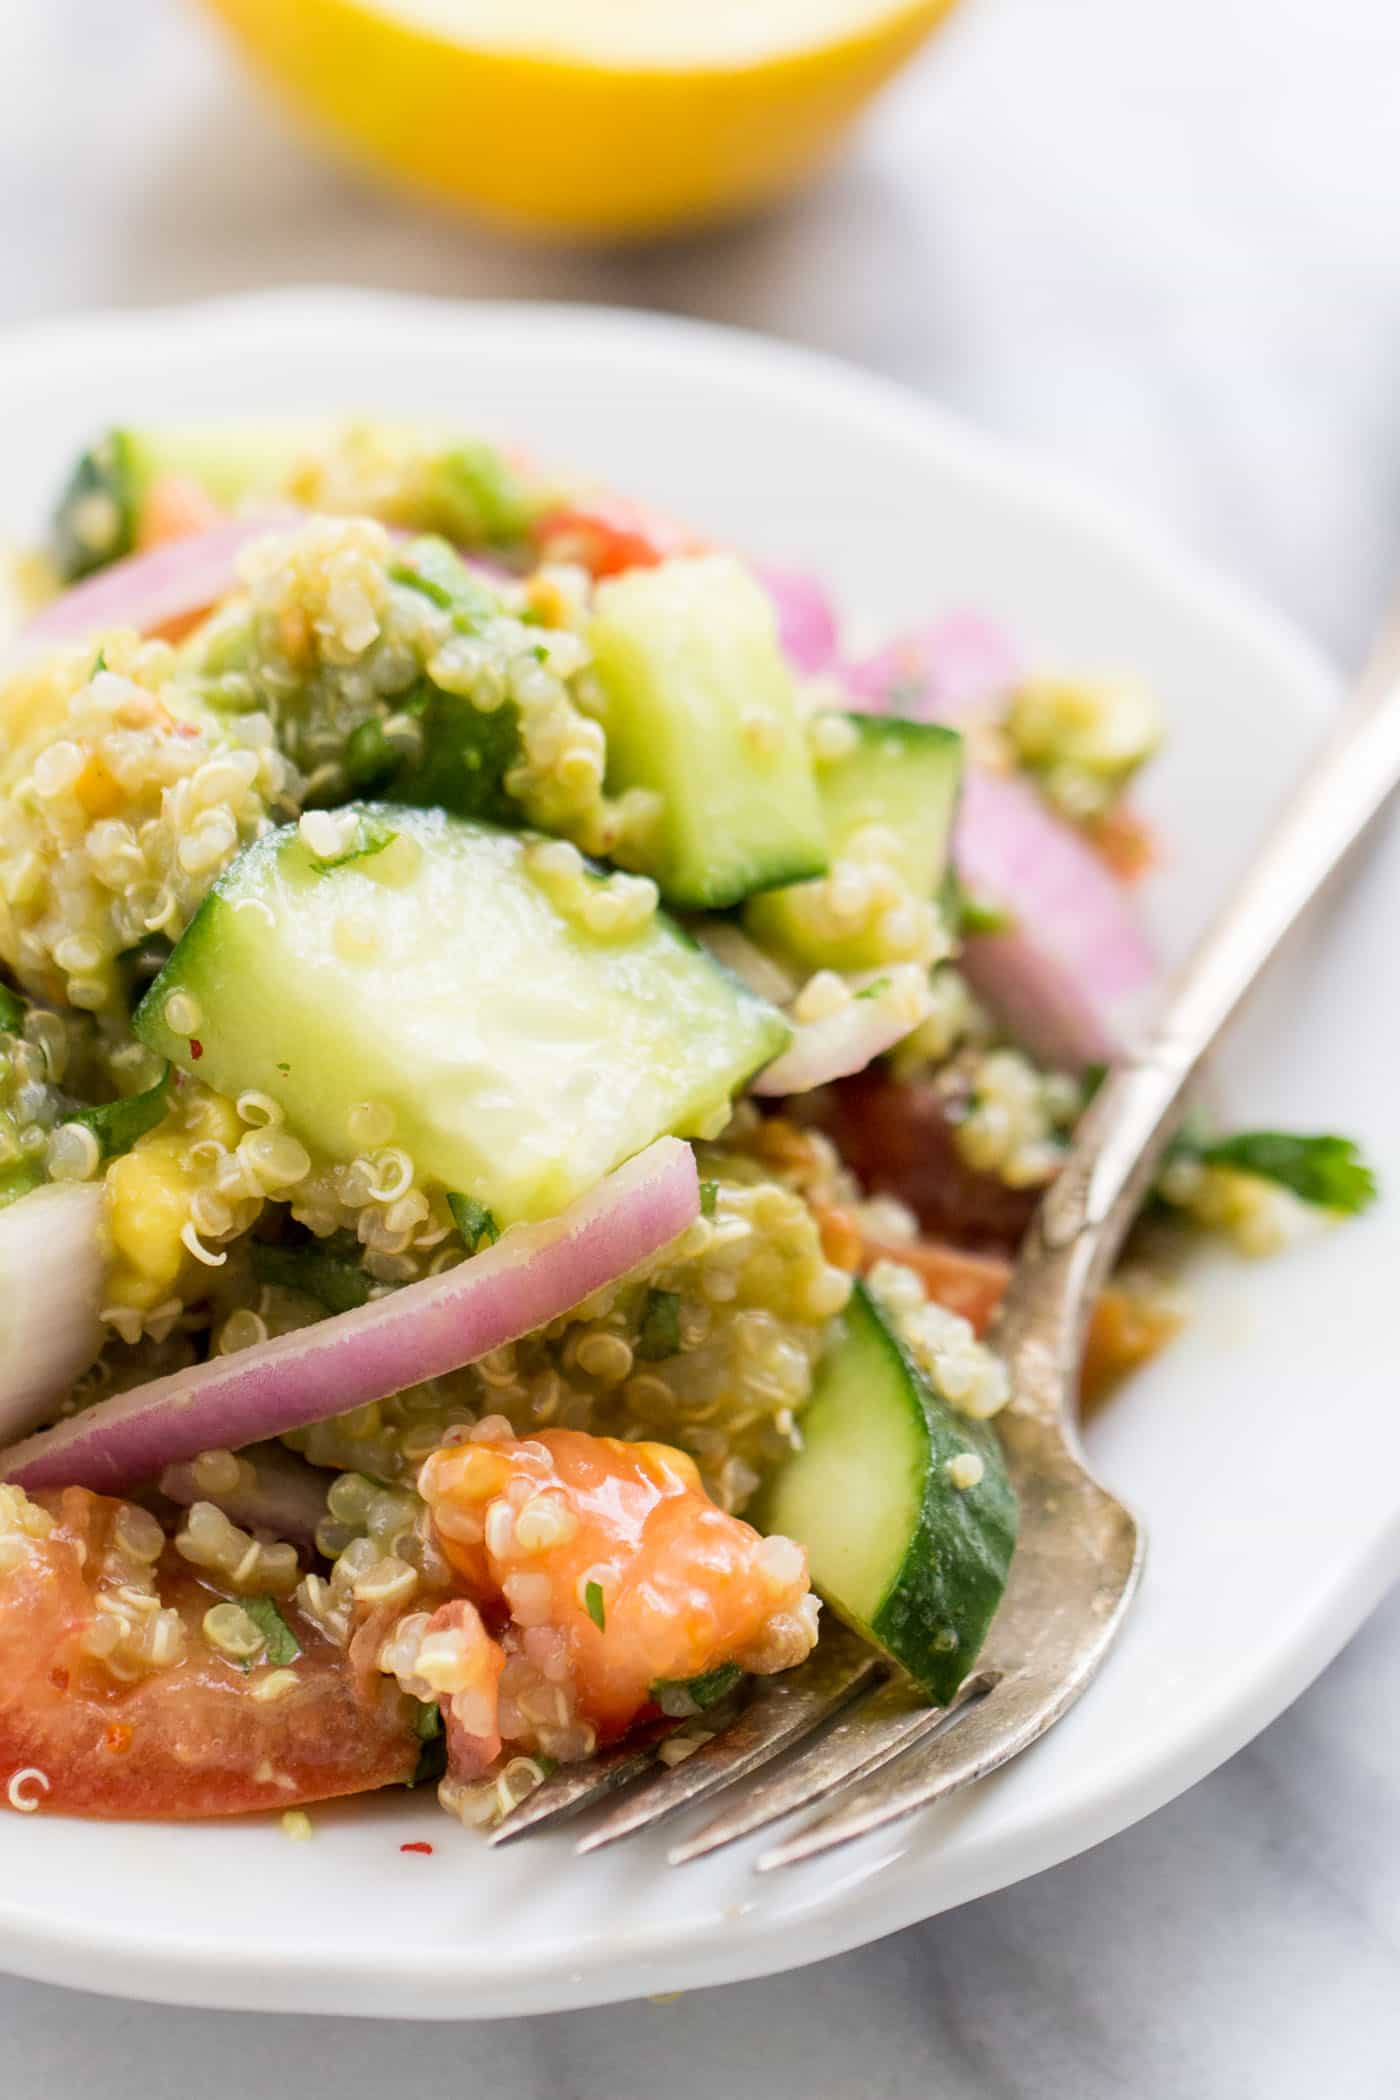 Avocado Quinoa Salat mit Tomaten + Gurken - so hell, frisch und gesund! Es ist der perfekte Sommersalat und einfach zu Picknicken oder zum Grillen zu packen {vegan}